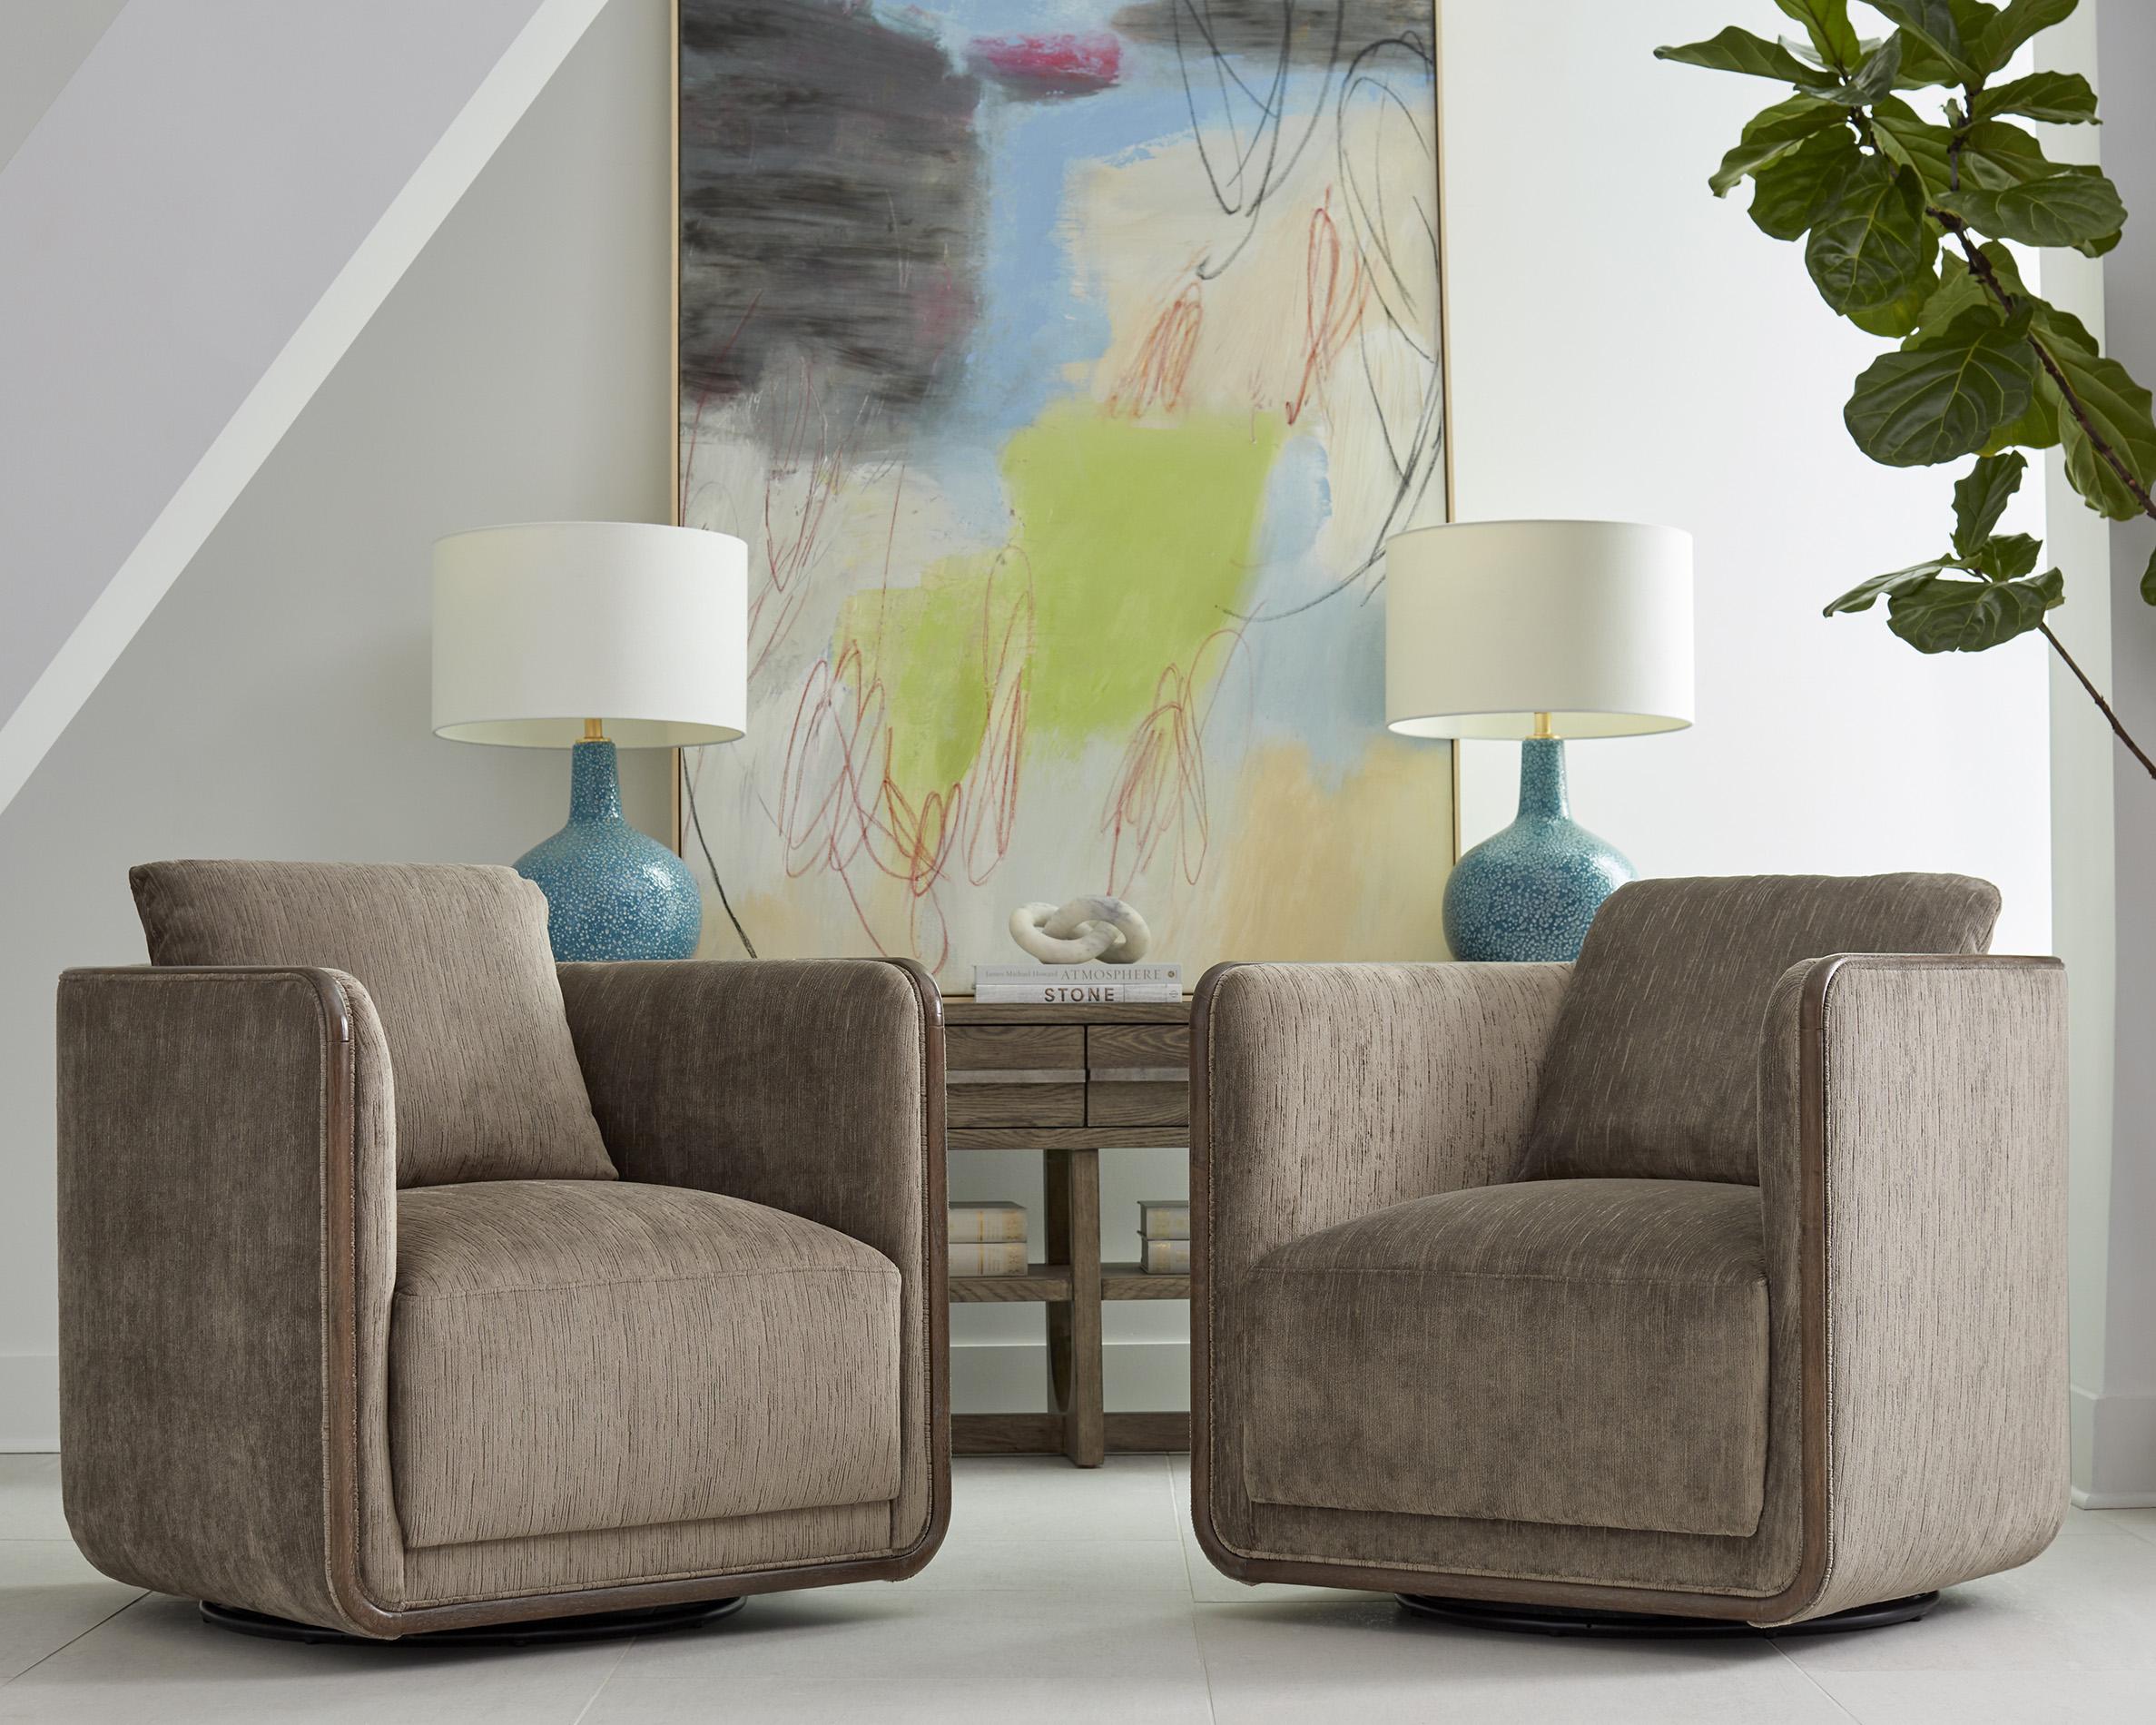 a.r.t. furniture Sagrada 764516-5303FJ-Set Swivel Chair Set